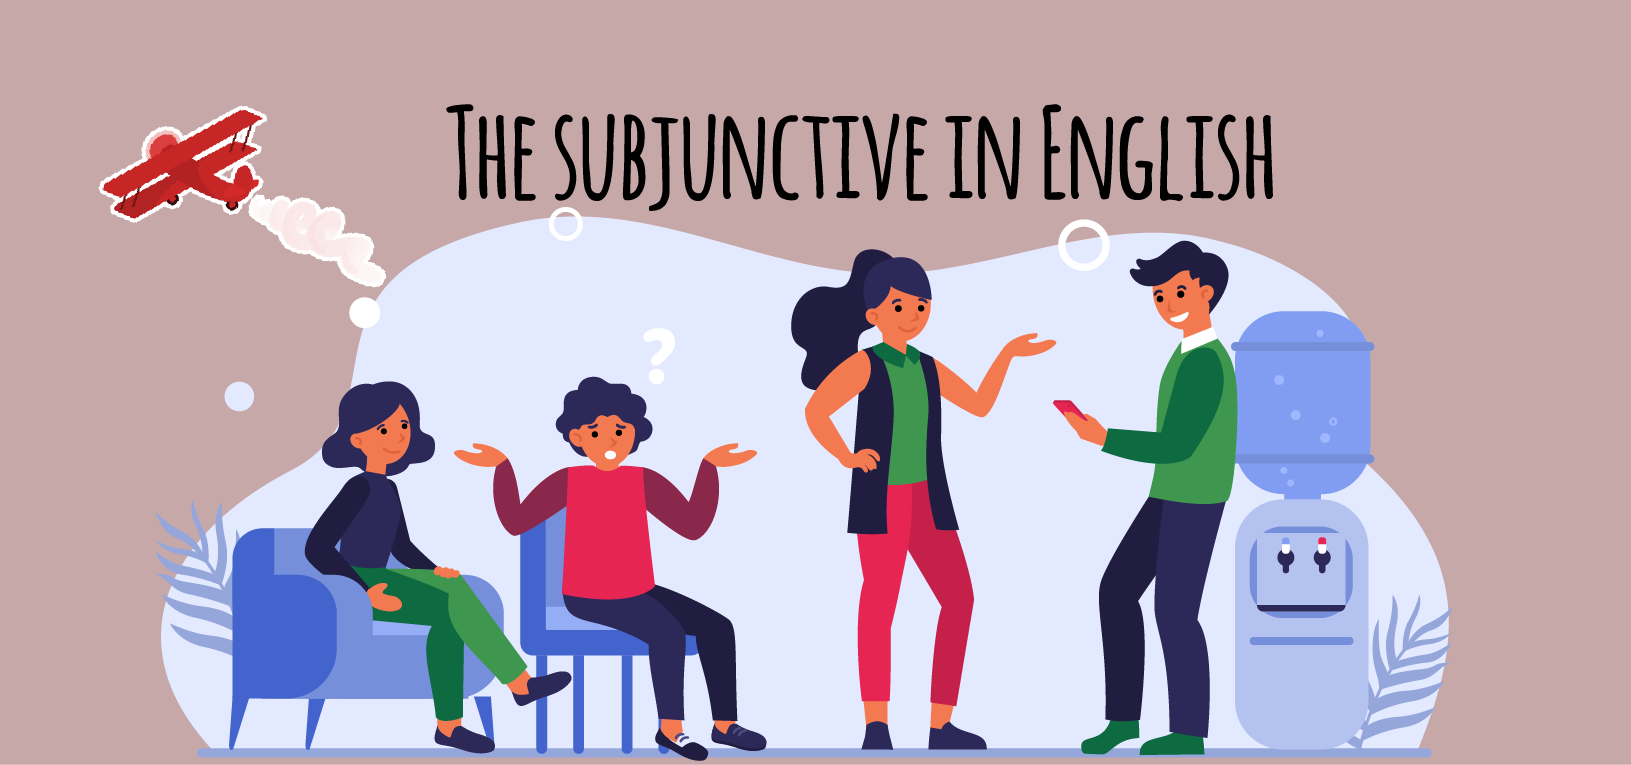 the-subjunctive-in-english-elblogdeidiomas-es-elblogdeidiomas-es